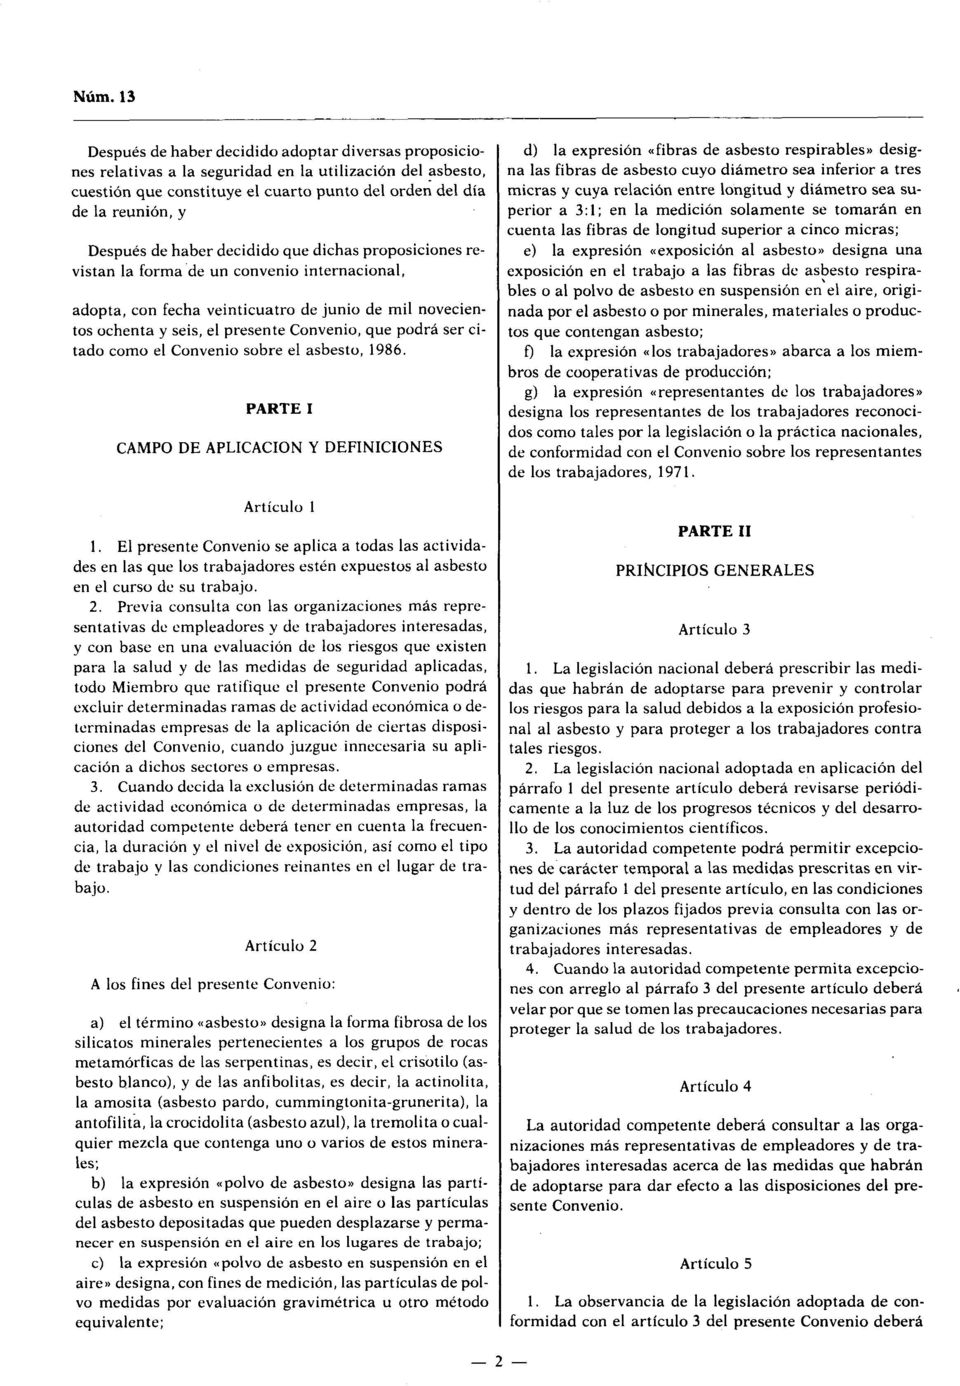 podrá ser citado como el Convenio sobre el asbesto, 1986. PARTE 1 CAMPO DE APLICACION Y DEFINICIONES Artículo 1 1.